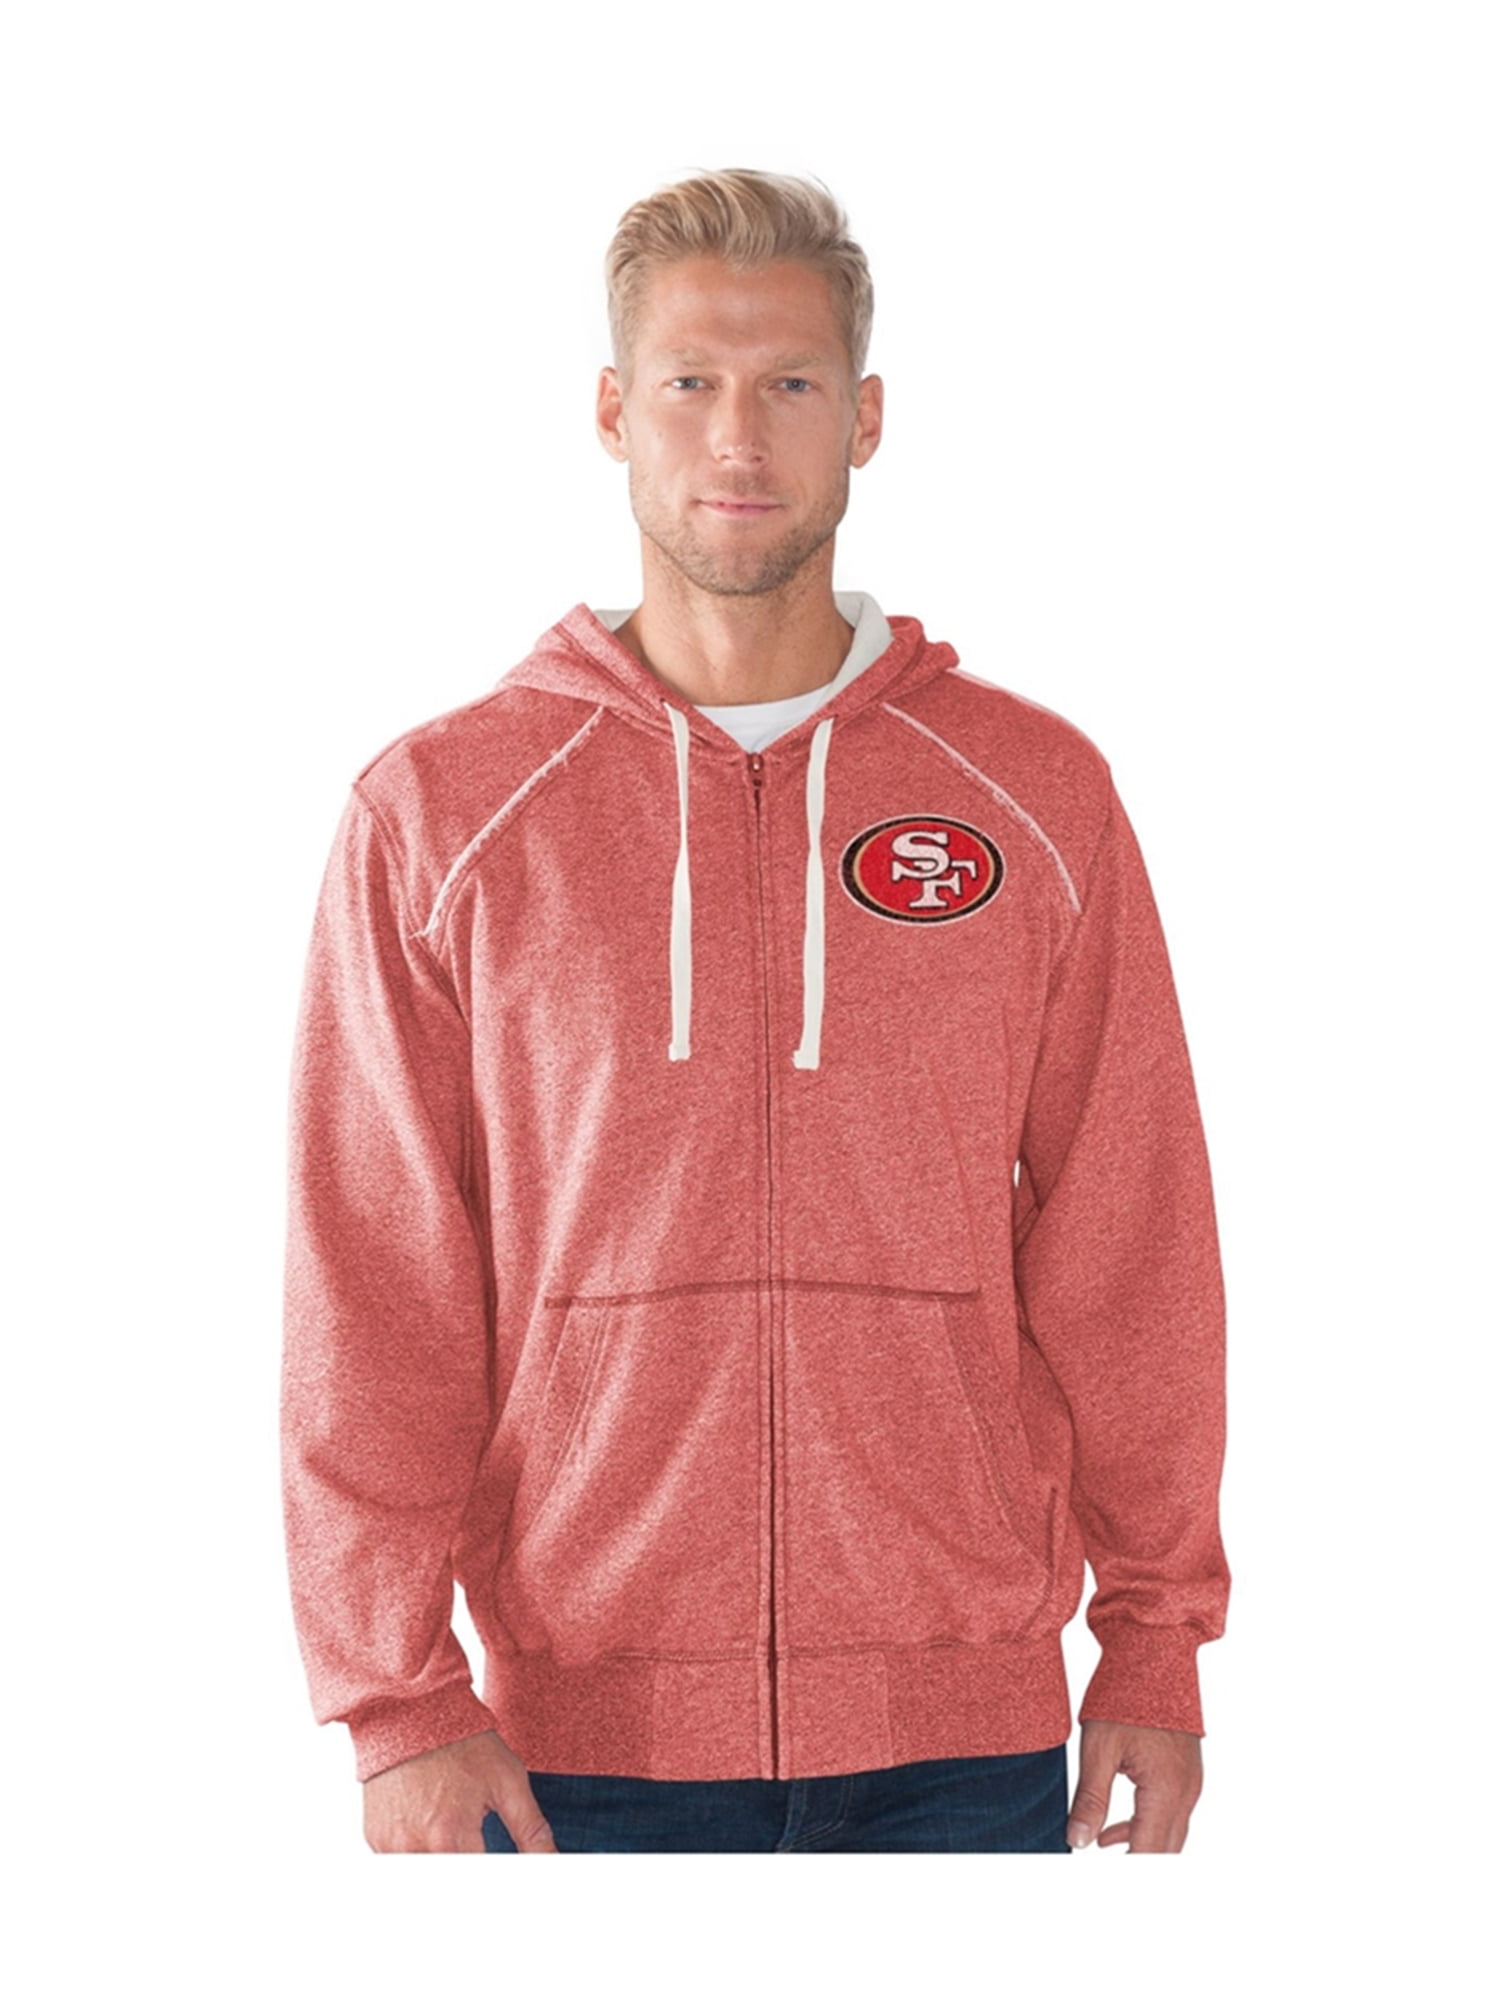 49ers hoodie mens